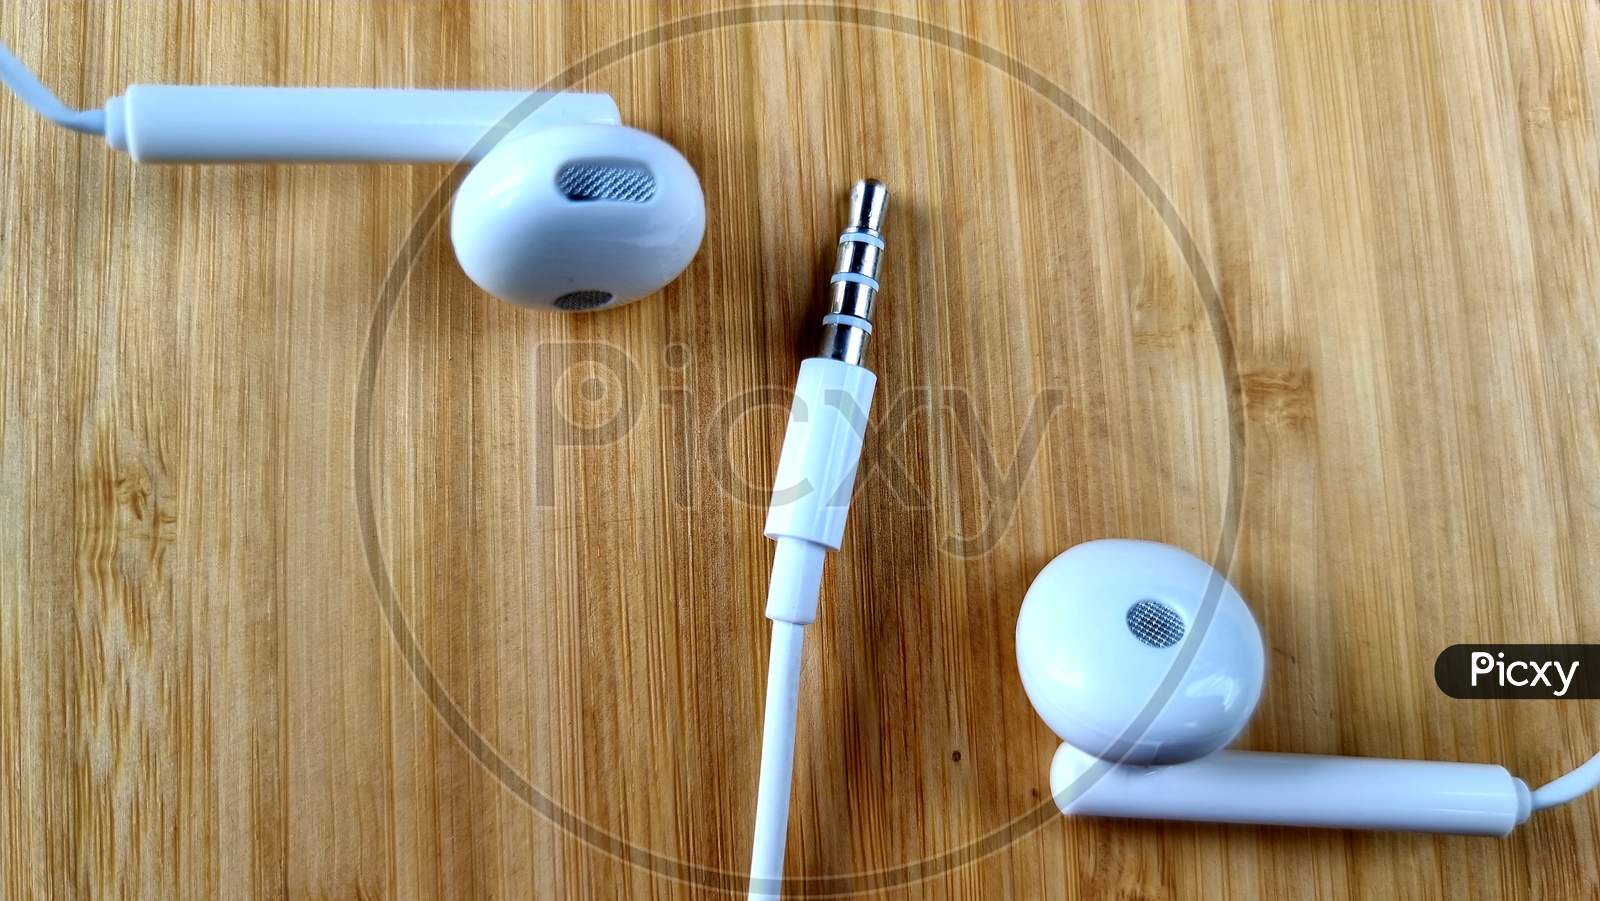 White Mobile headphones on wooden table, white headphones